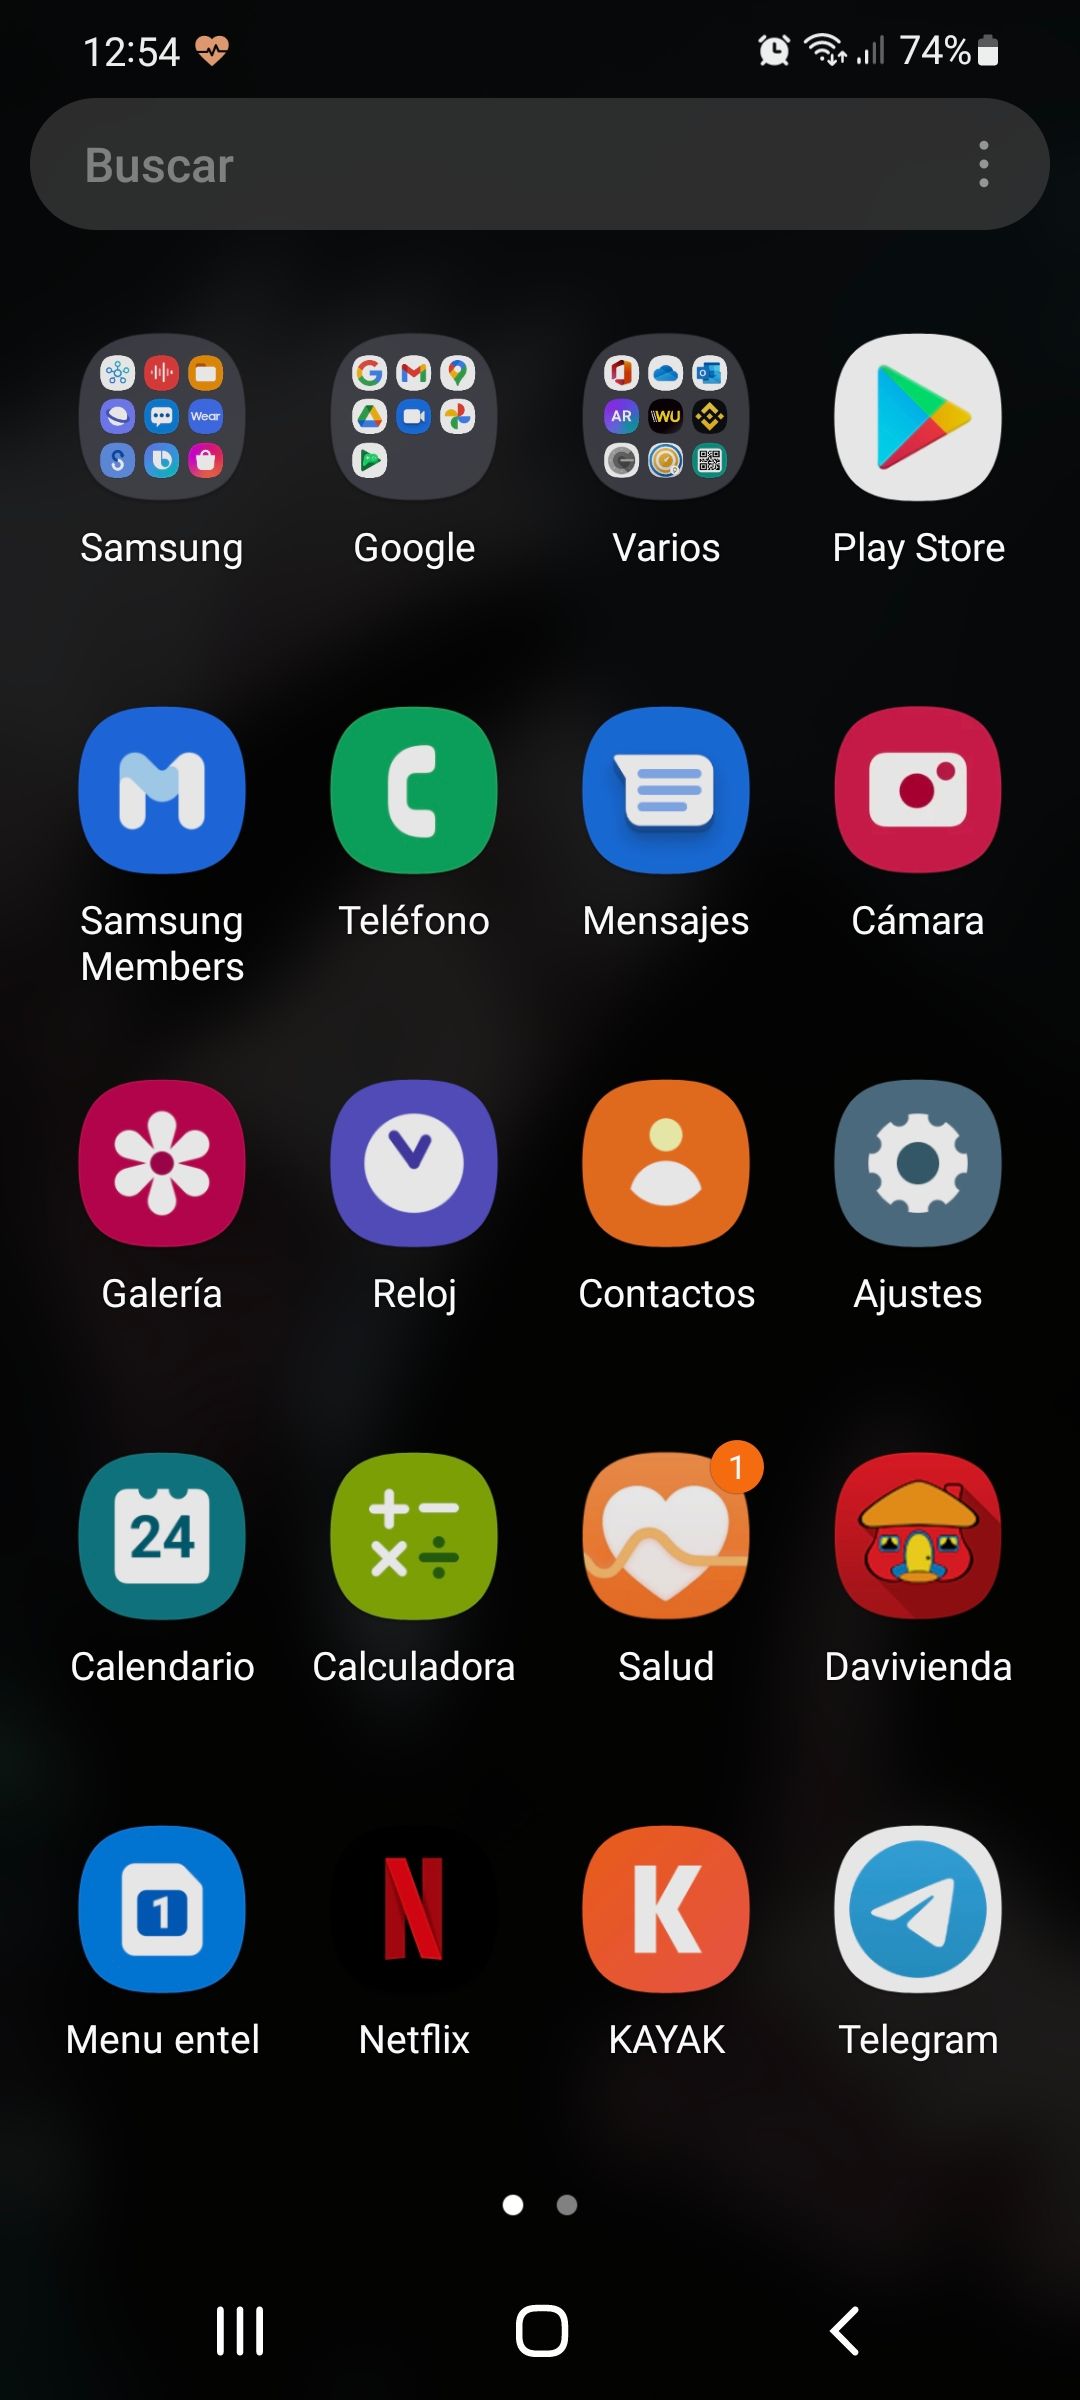 Se podra cambiar fondo de pantalla en app? - Samsung Members